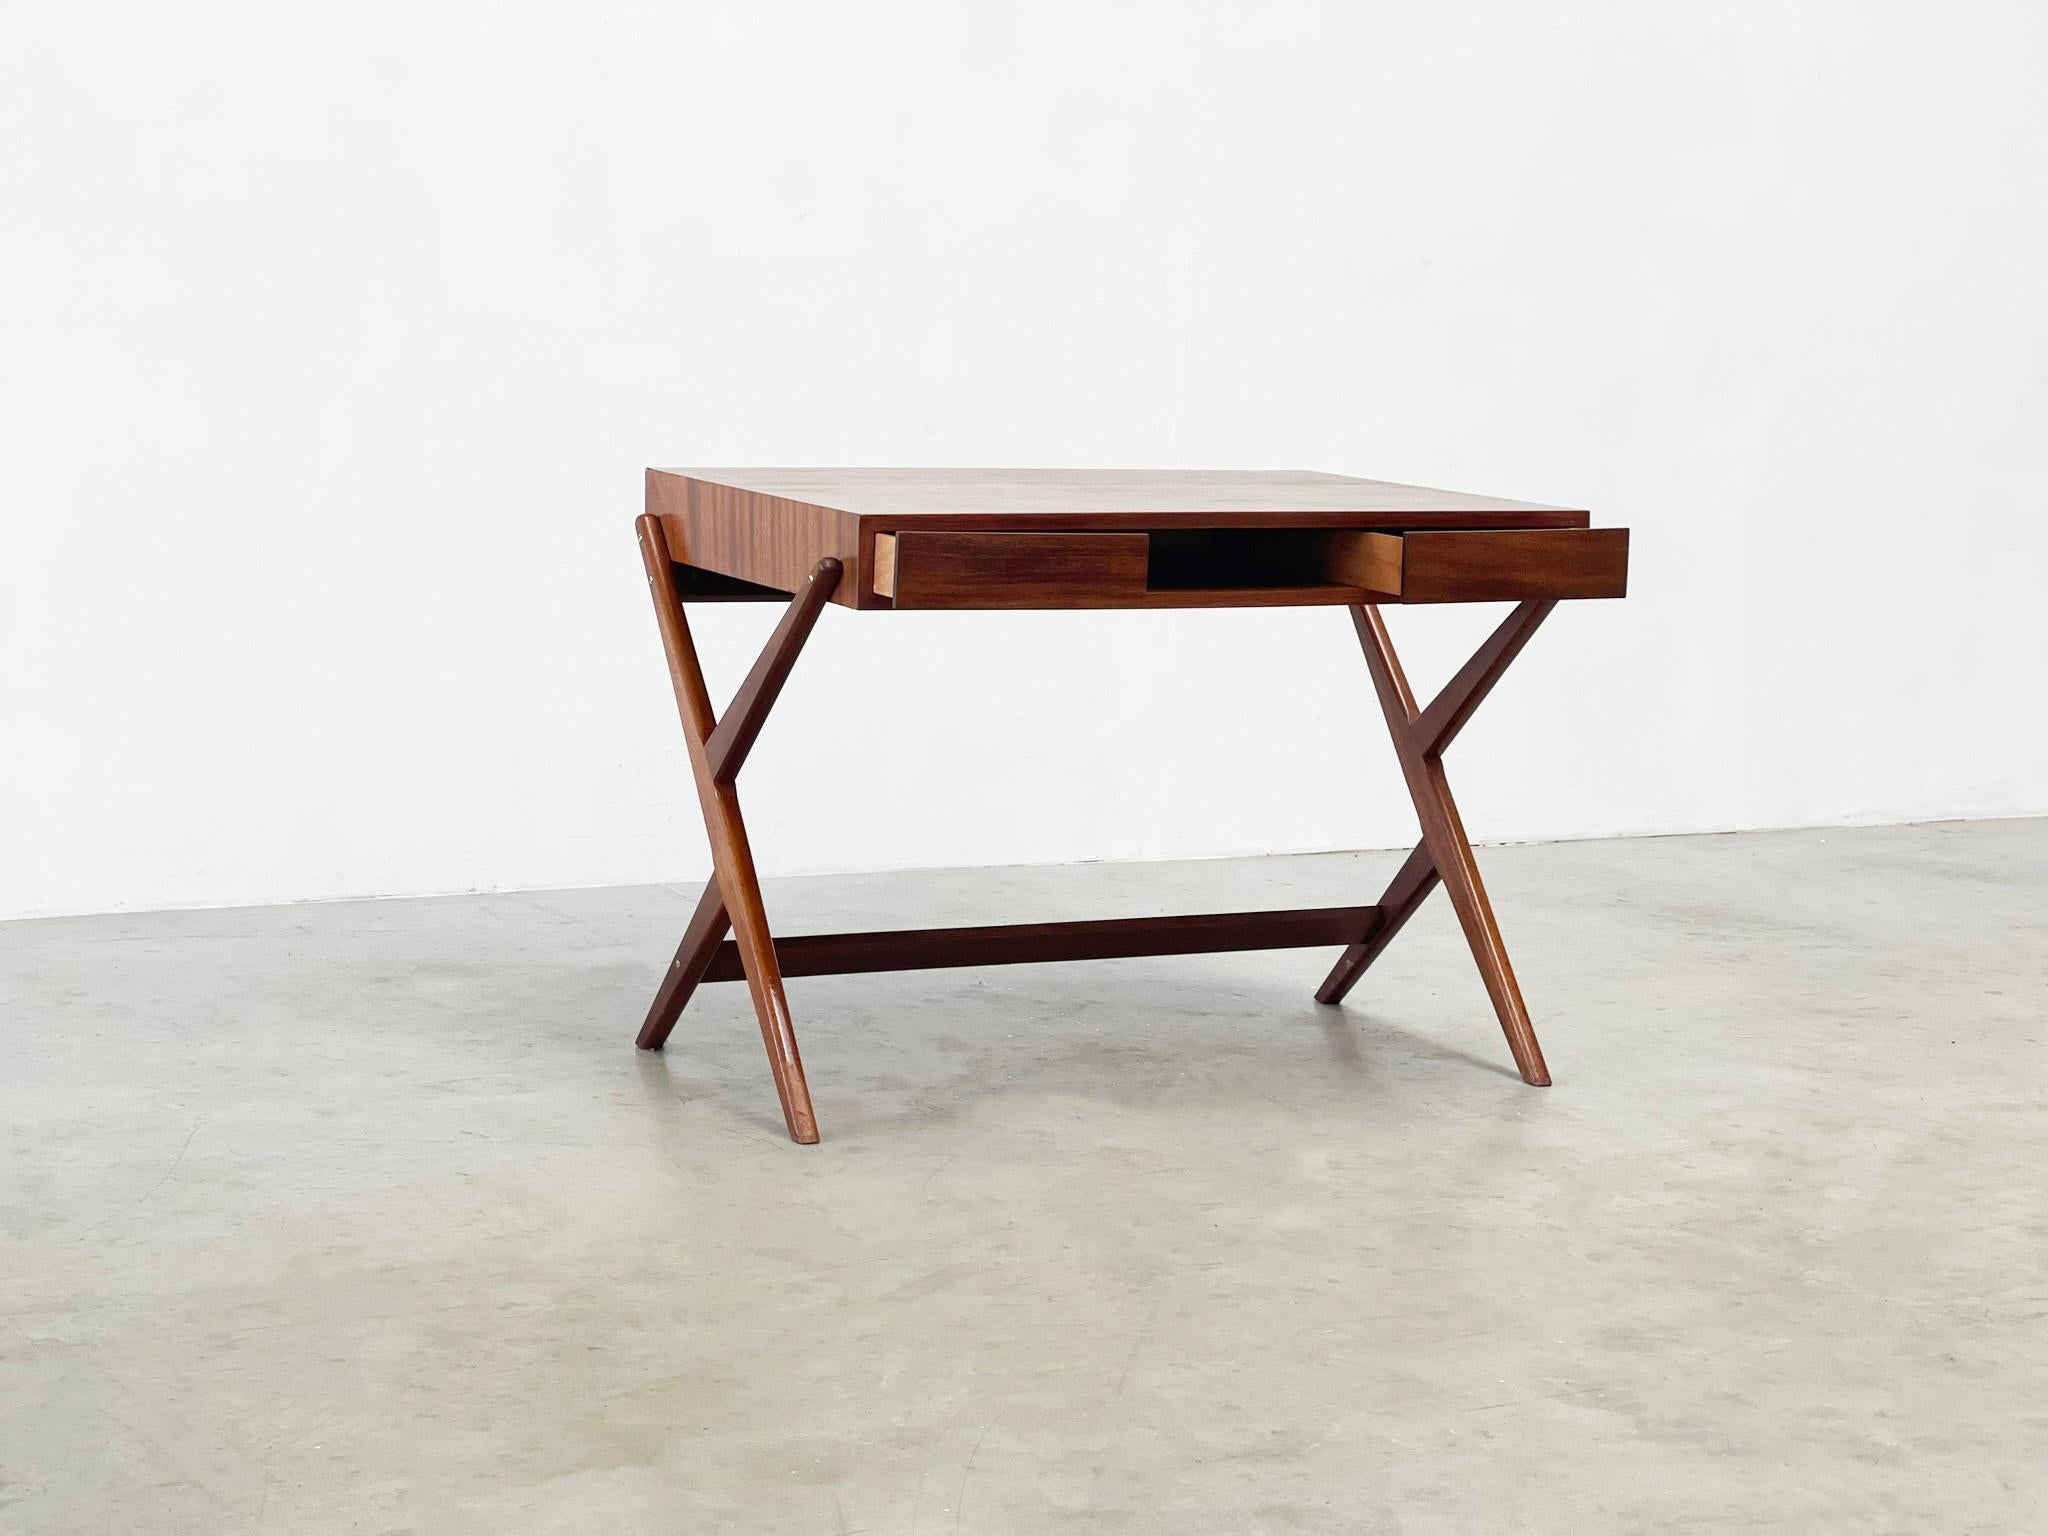 1970er doppelseitiger italienischer Schreibtisch
Ein wunderschöner italienischer Schreibtisch aus Holz, entworfen und hergestellt von einem unbekannten Designer. Es wurde wahrscheinlich in den späten 1970er Jahren in Italien hergestellt. Es handelt